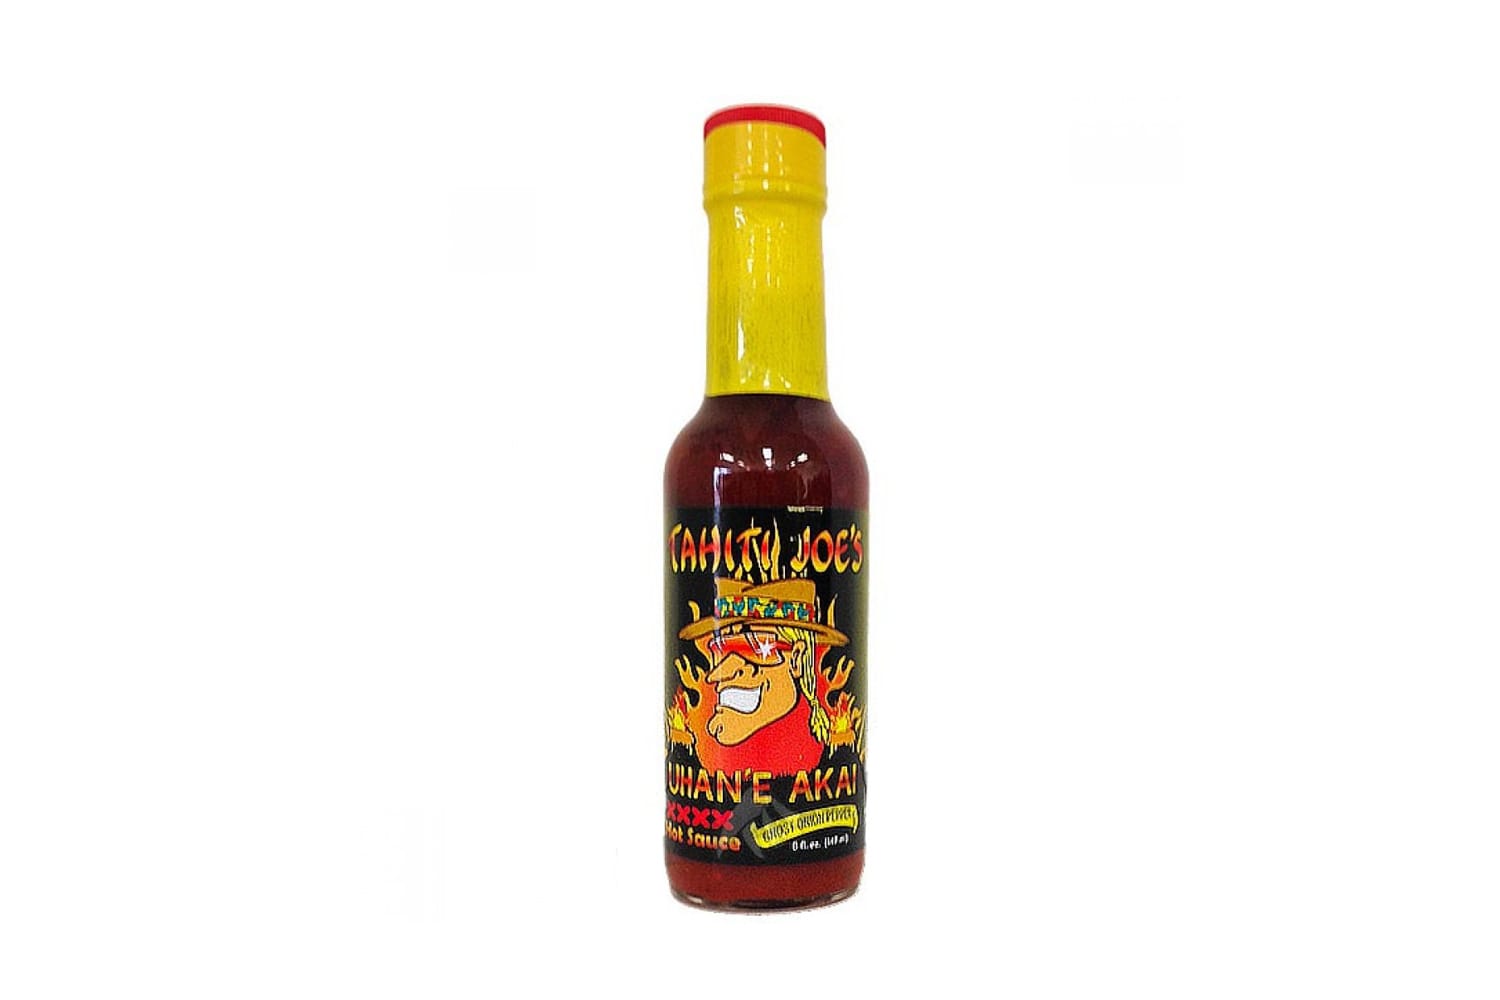 Wer Spaß am Schmerz hat, sollte diese preisgekrönte Sauce Uhan’e Akai mit Ghost Onion Pepper von Tahiti Joe (um 13 Euro) versuchen.